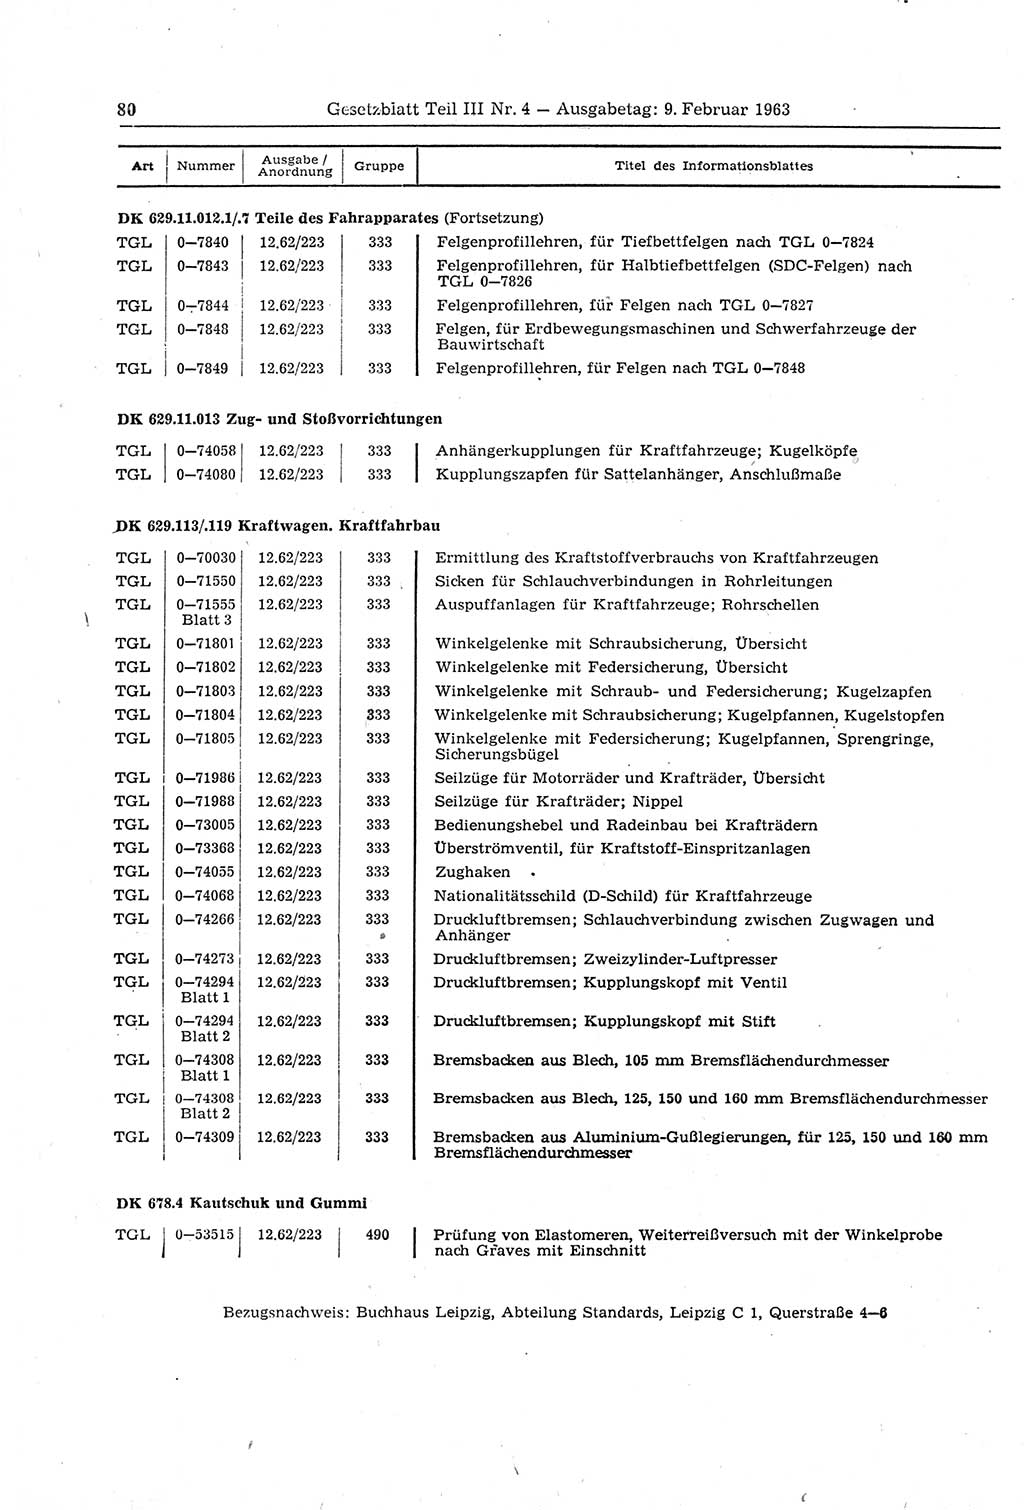 Gesetzblatt (GBl.) der Deutschen Demokratischen Republik (DDR) Teil ⅠⅠⅠ 1963, Seite 80 (GBl. DDR ⅠⅠⅠ 1963, S. 80)